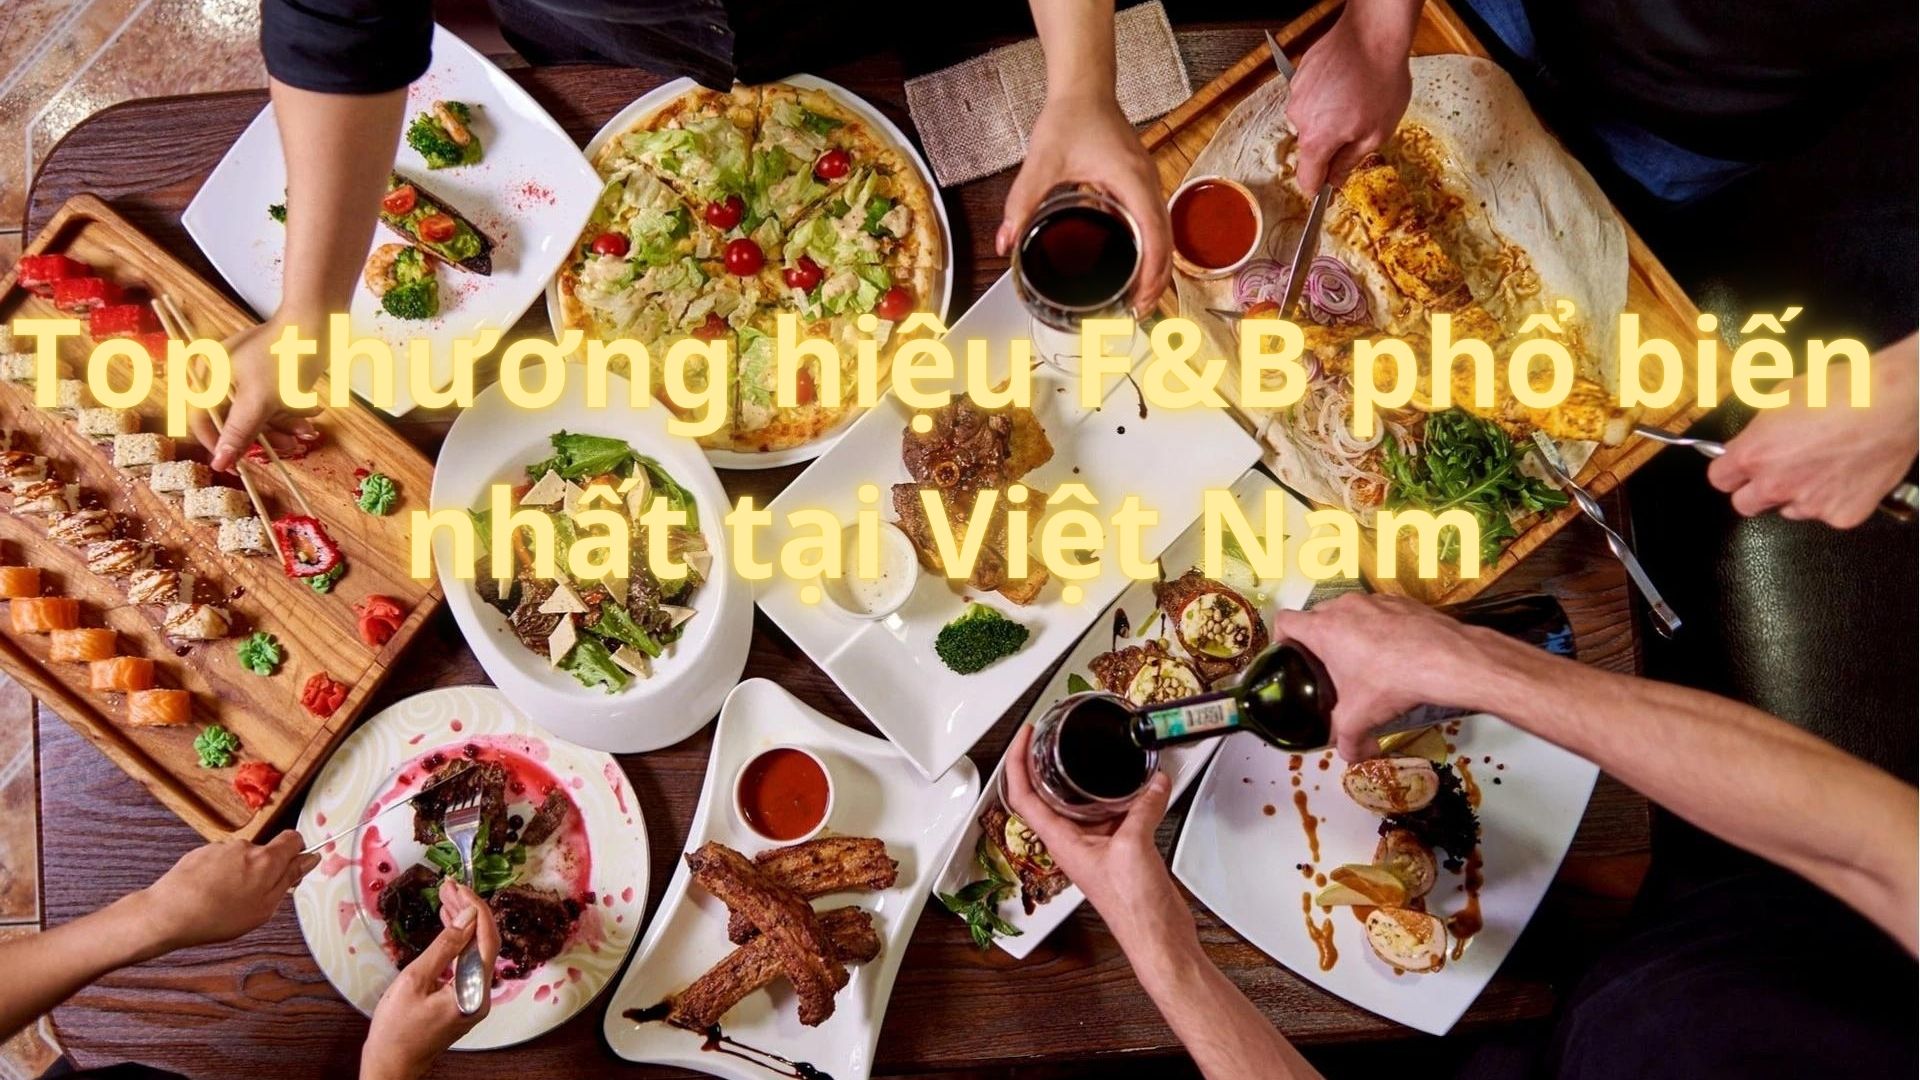 Top thương hiệu F&B phổ biến nhất tại Việt Nam